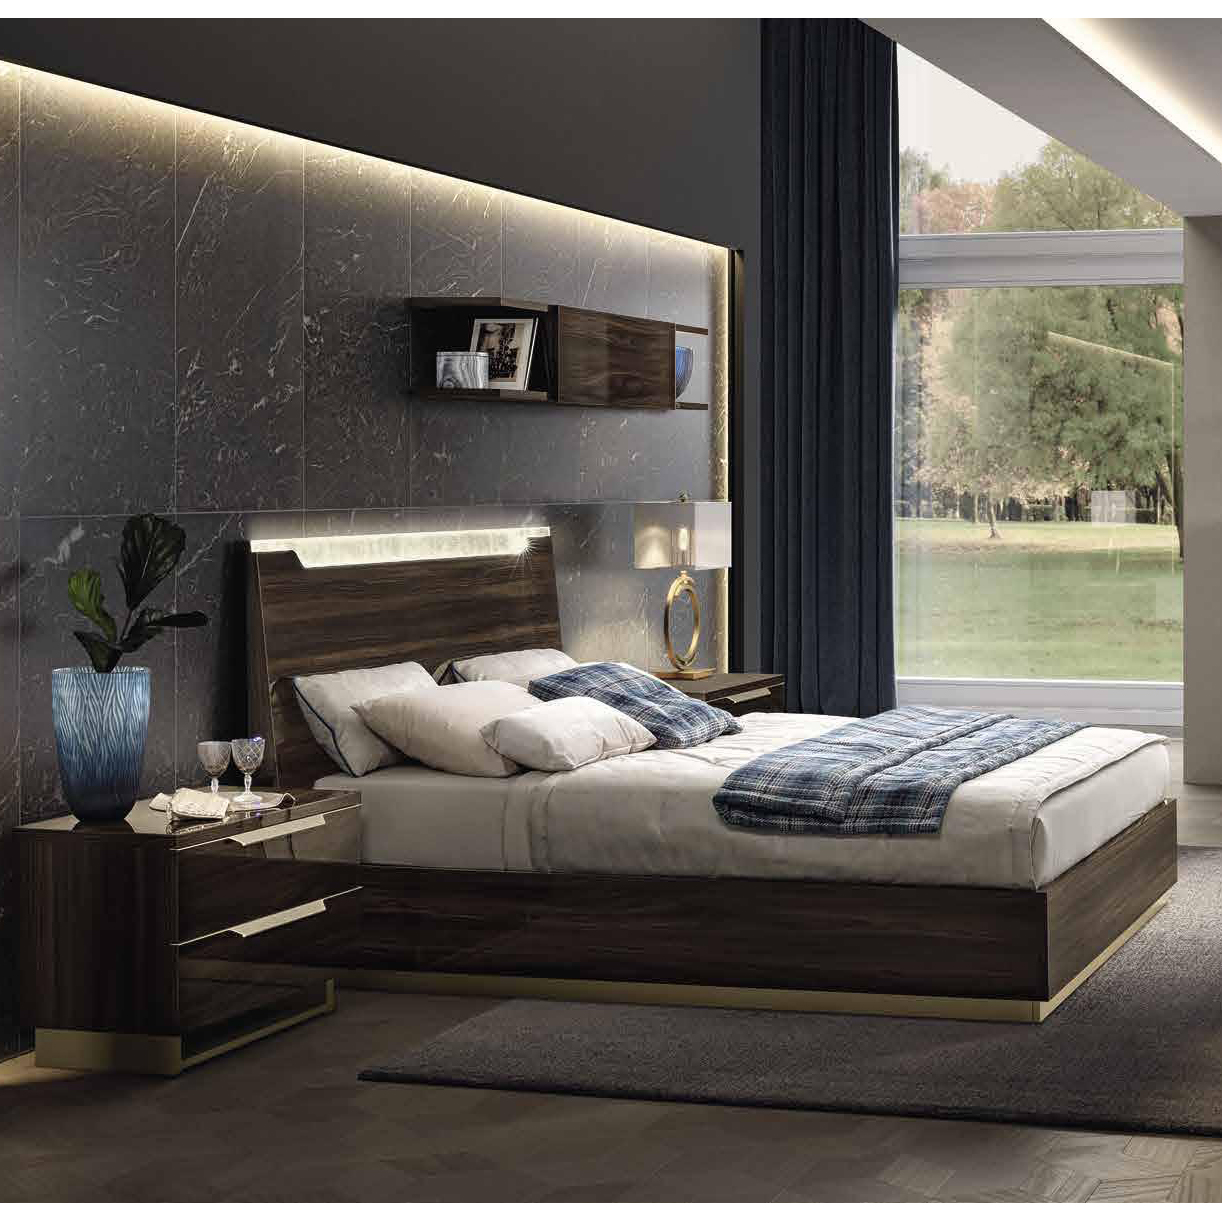 Кровать Camelgroup Smart Noce Patrizio, двуспальная, цвет: грецкий орех, 180x200 см (162LET.03NP)162LET.03NP